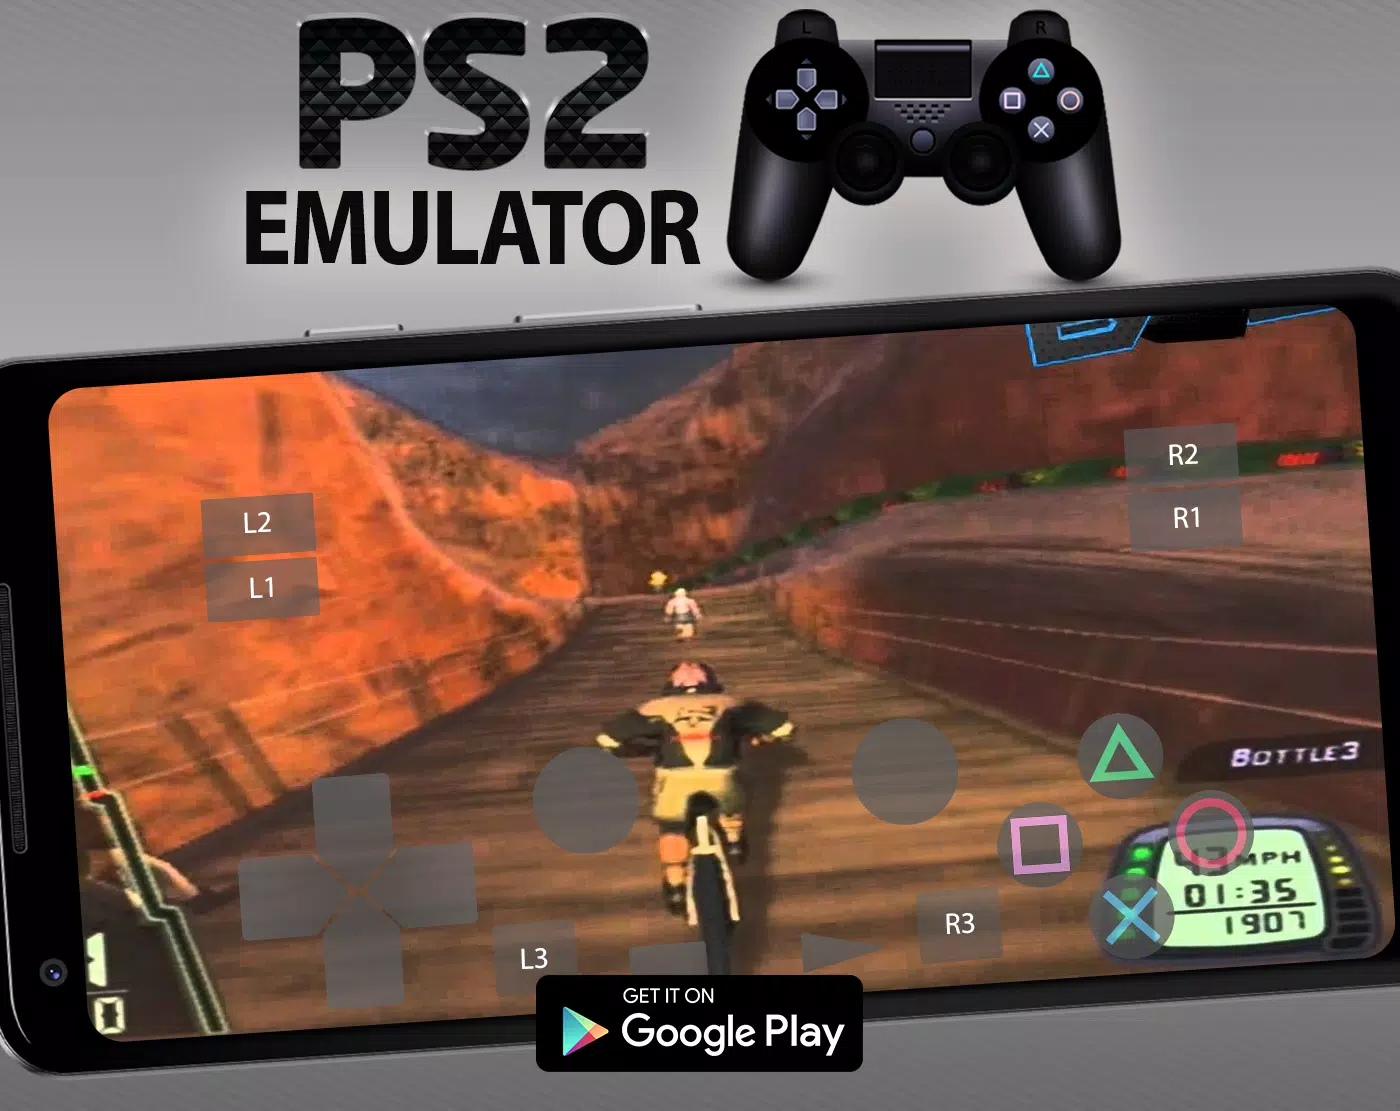 DS] Playstation 2 Emulator: PCSX2 1.2.0 Released! (DOWNLOAD LINK